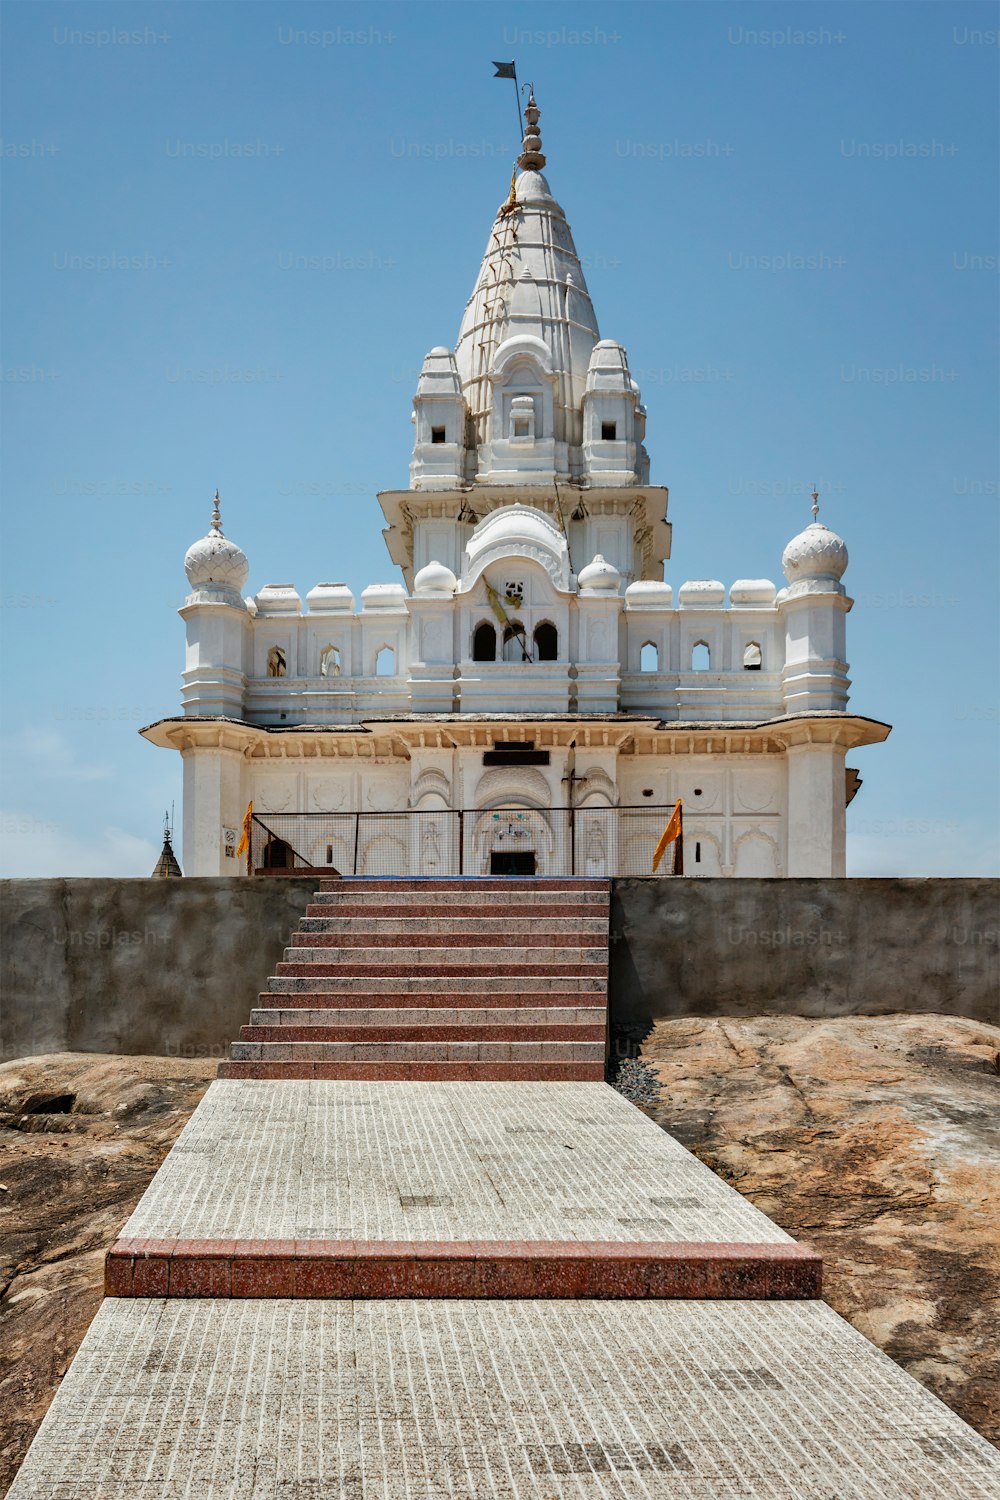 Sonagiri Jain Tempelkomplex - wichtiger religiöser und Wallfahrtsort, Bundesstaat Madhya Pradesh, Indien